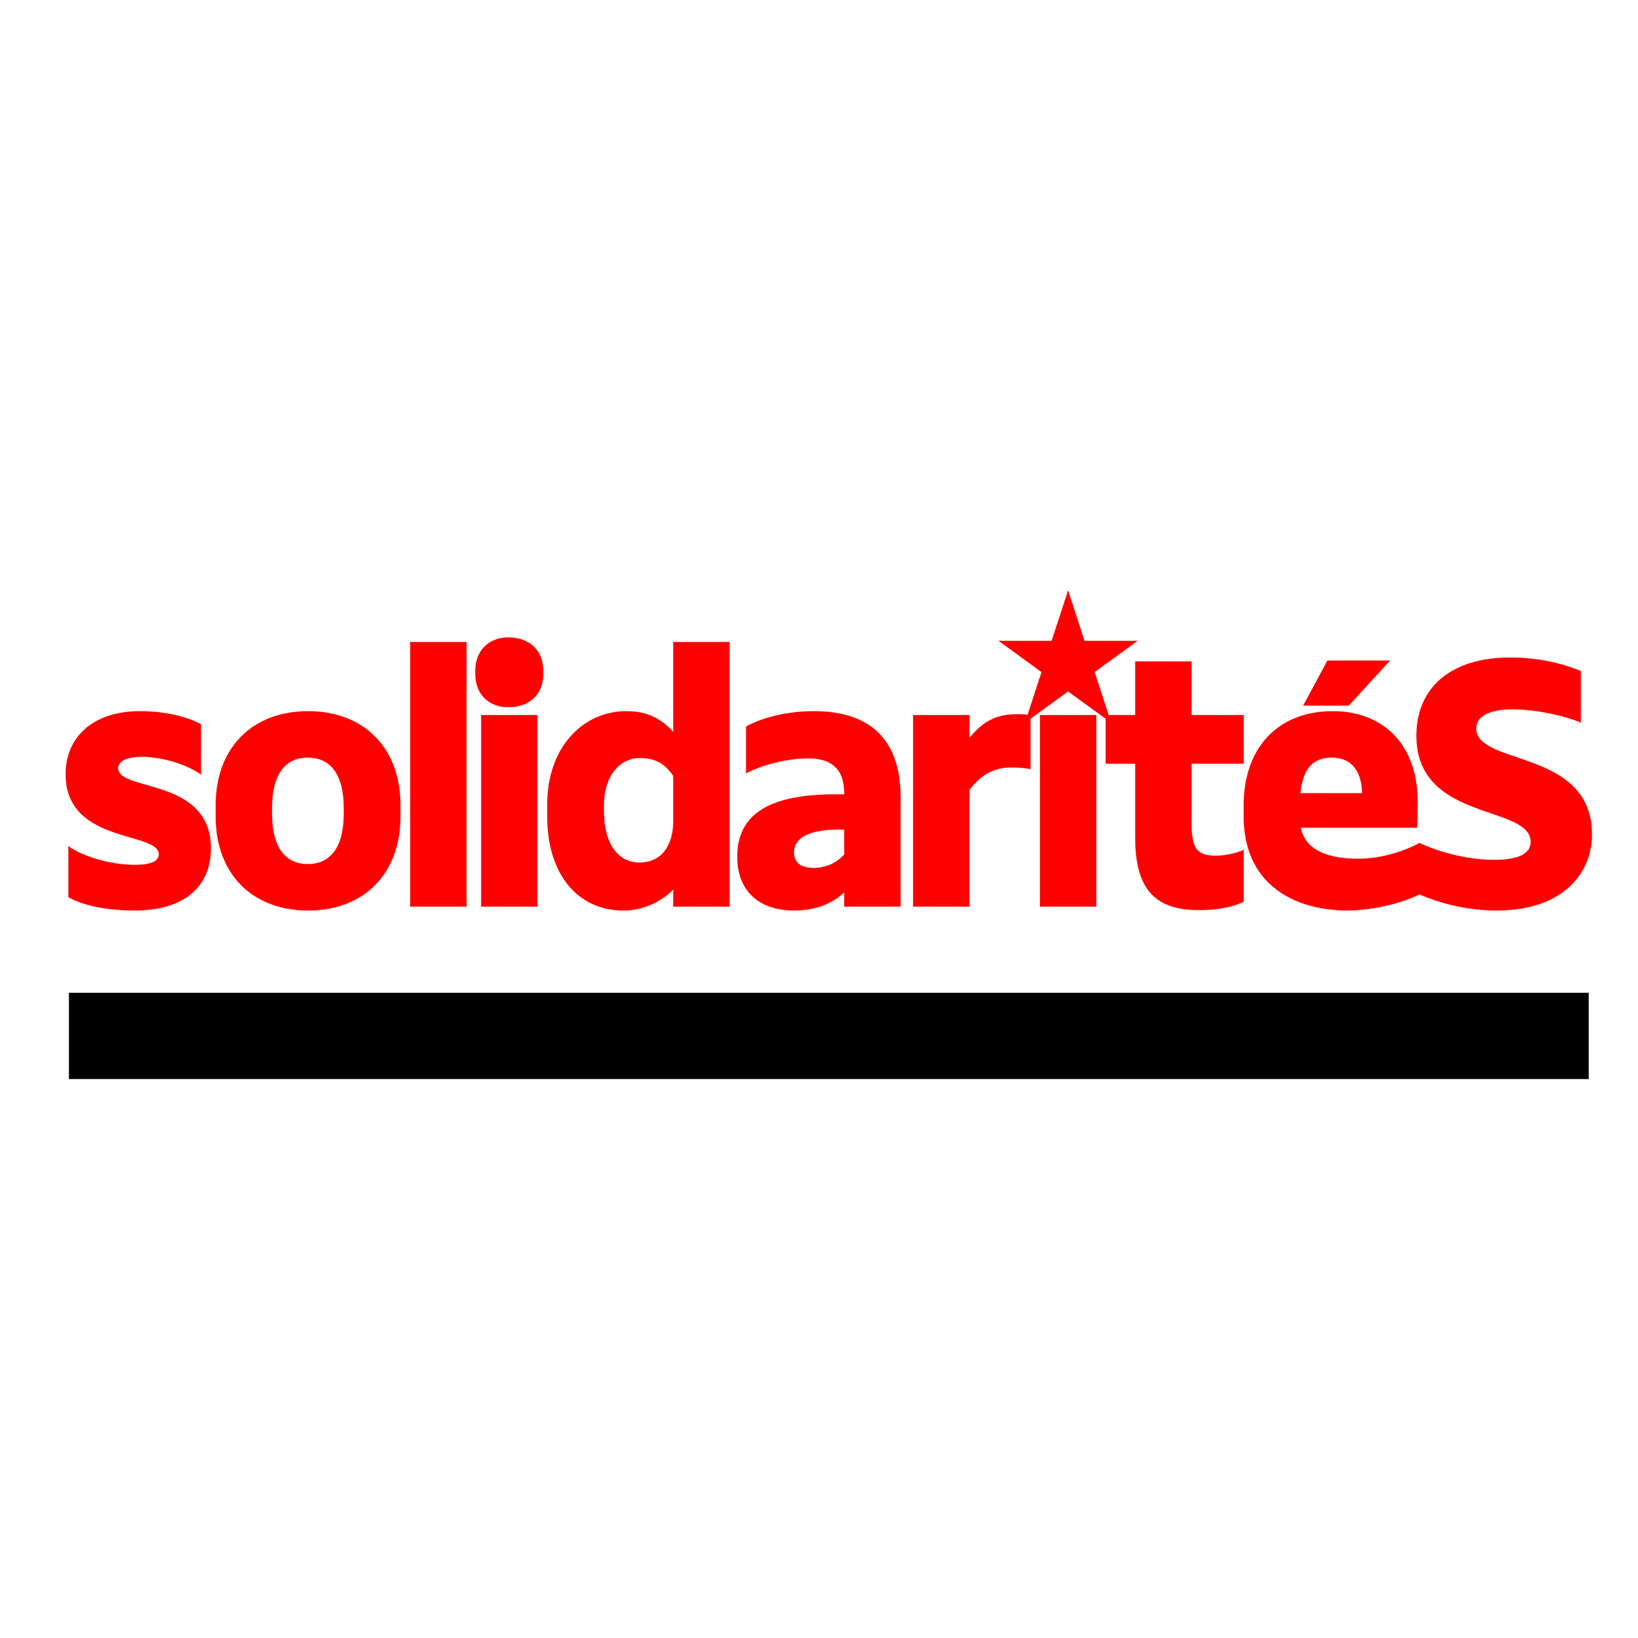 solidaritéS